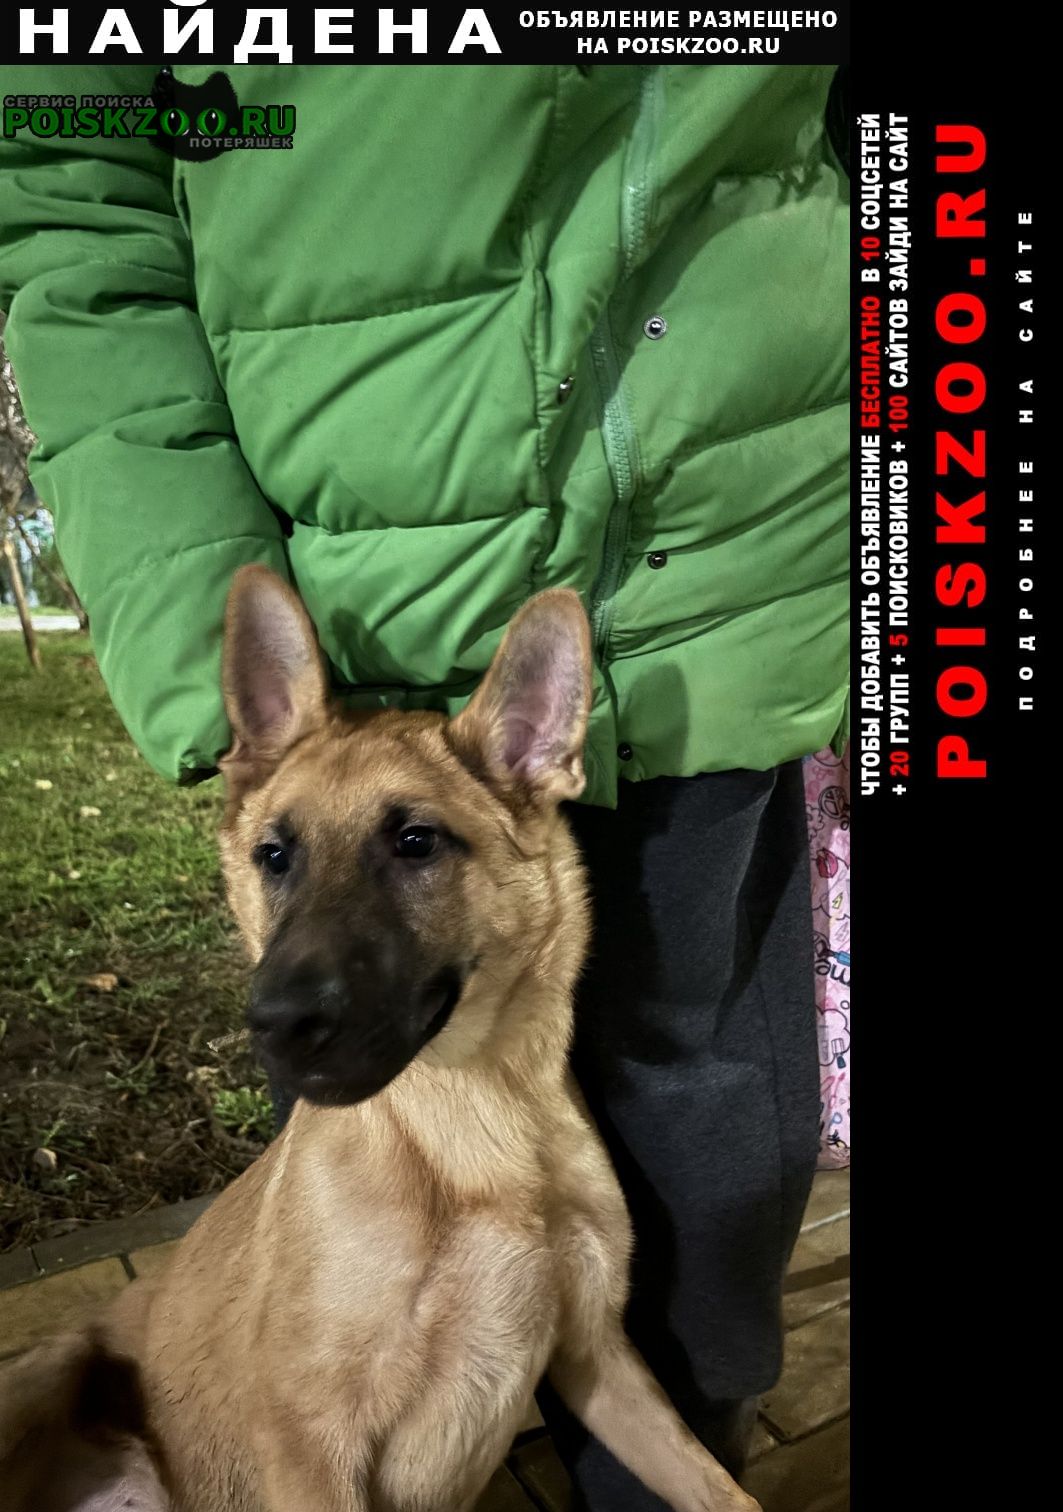 Найдена собака кобель щенок, кобель Севастополь